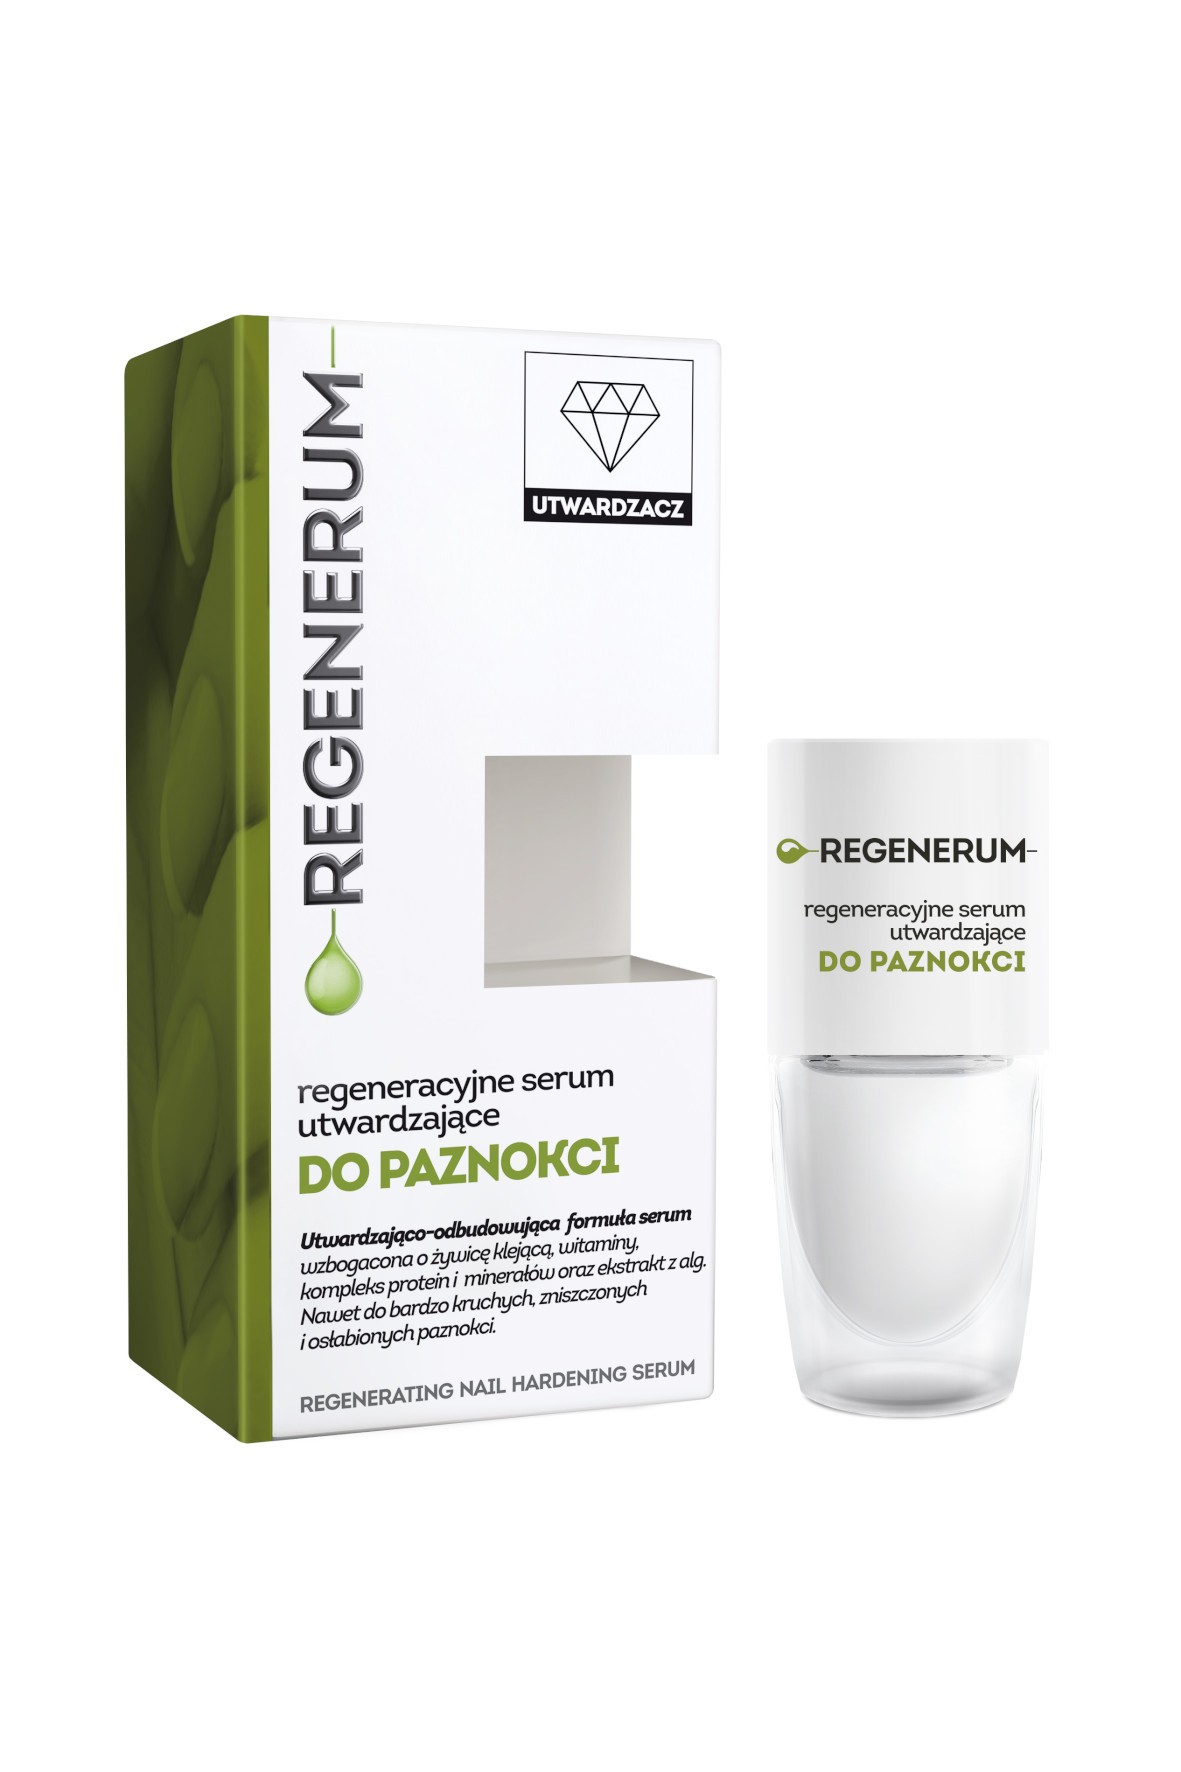 REGENERUM regeneracyjne serum utwardzające do paznokci, 8 ml 